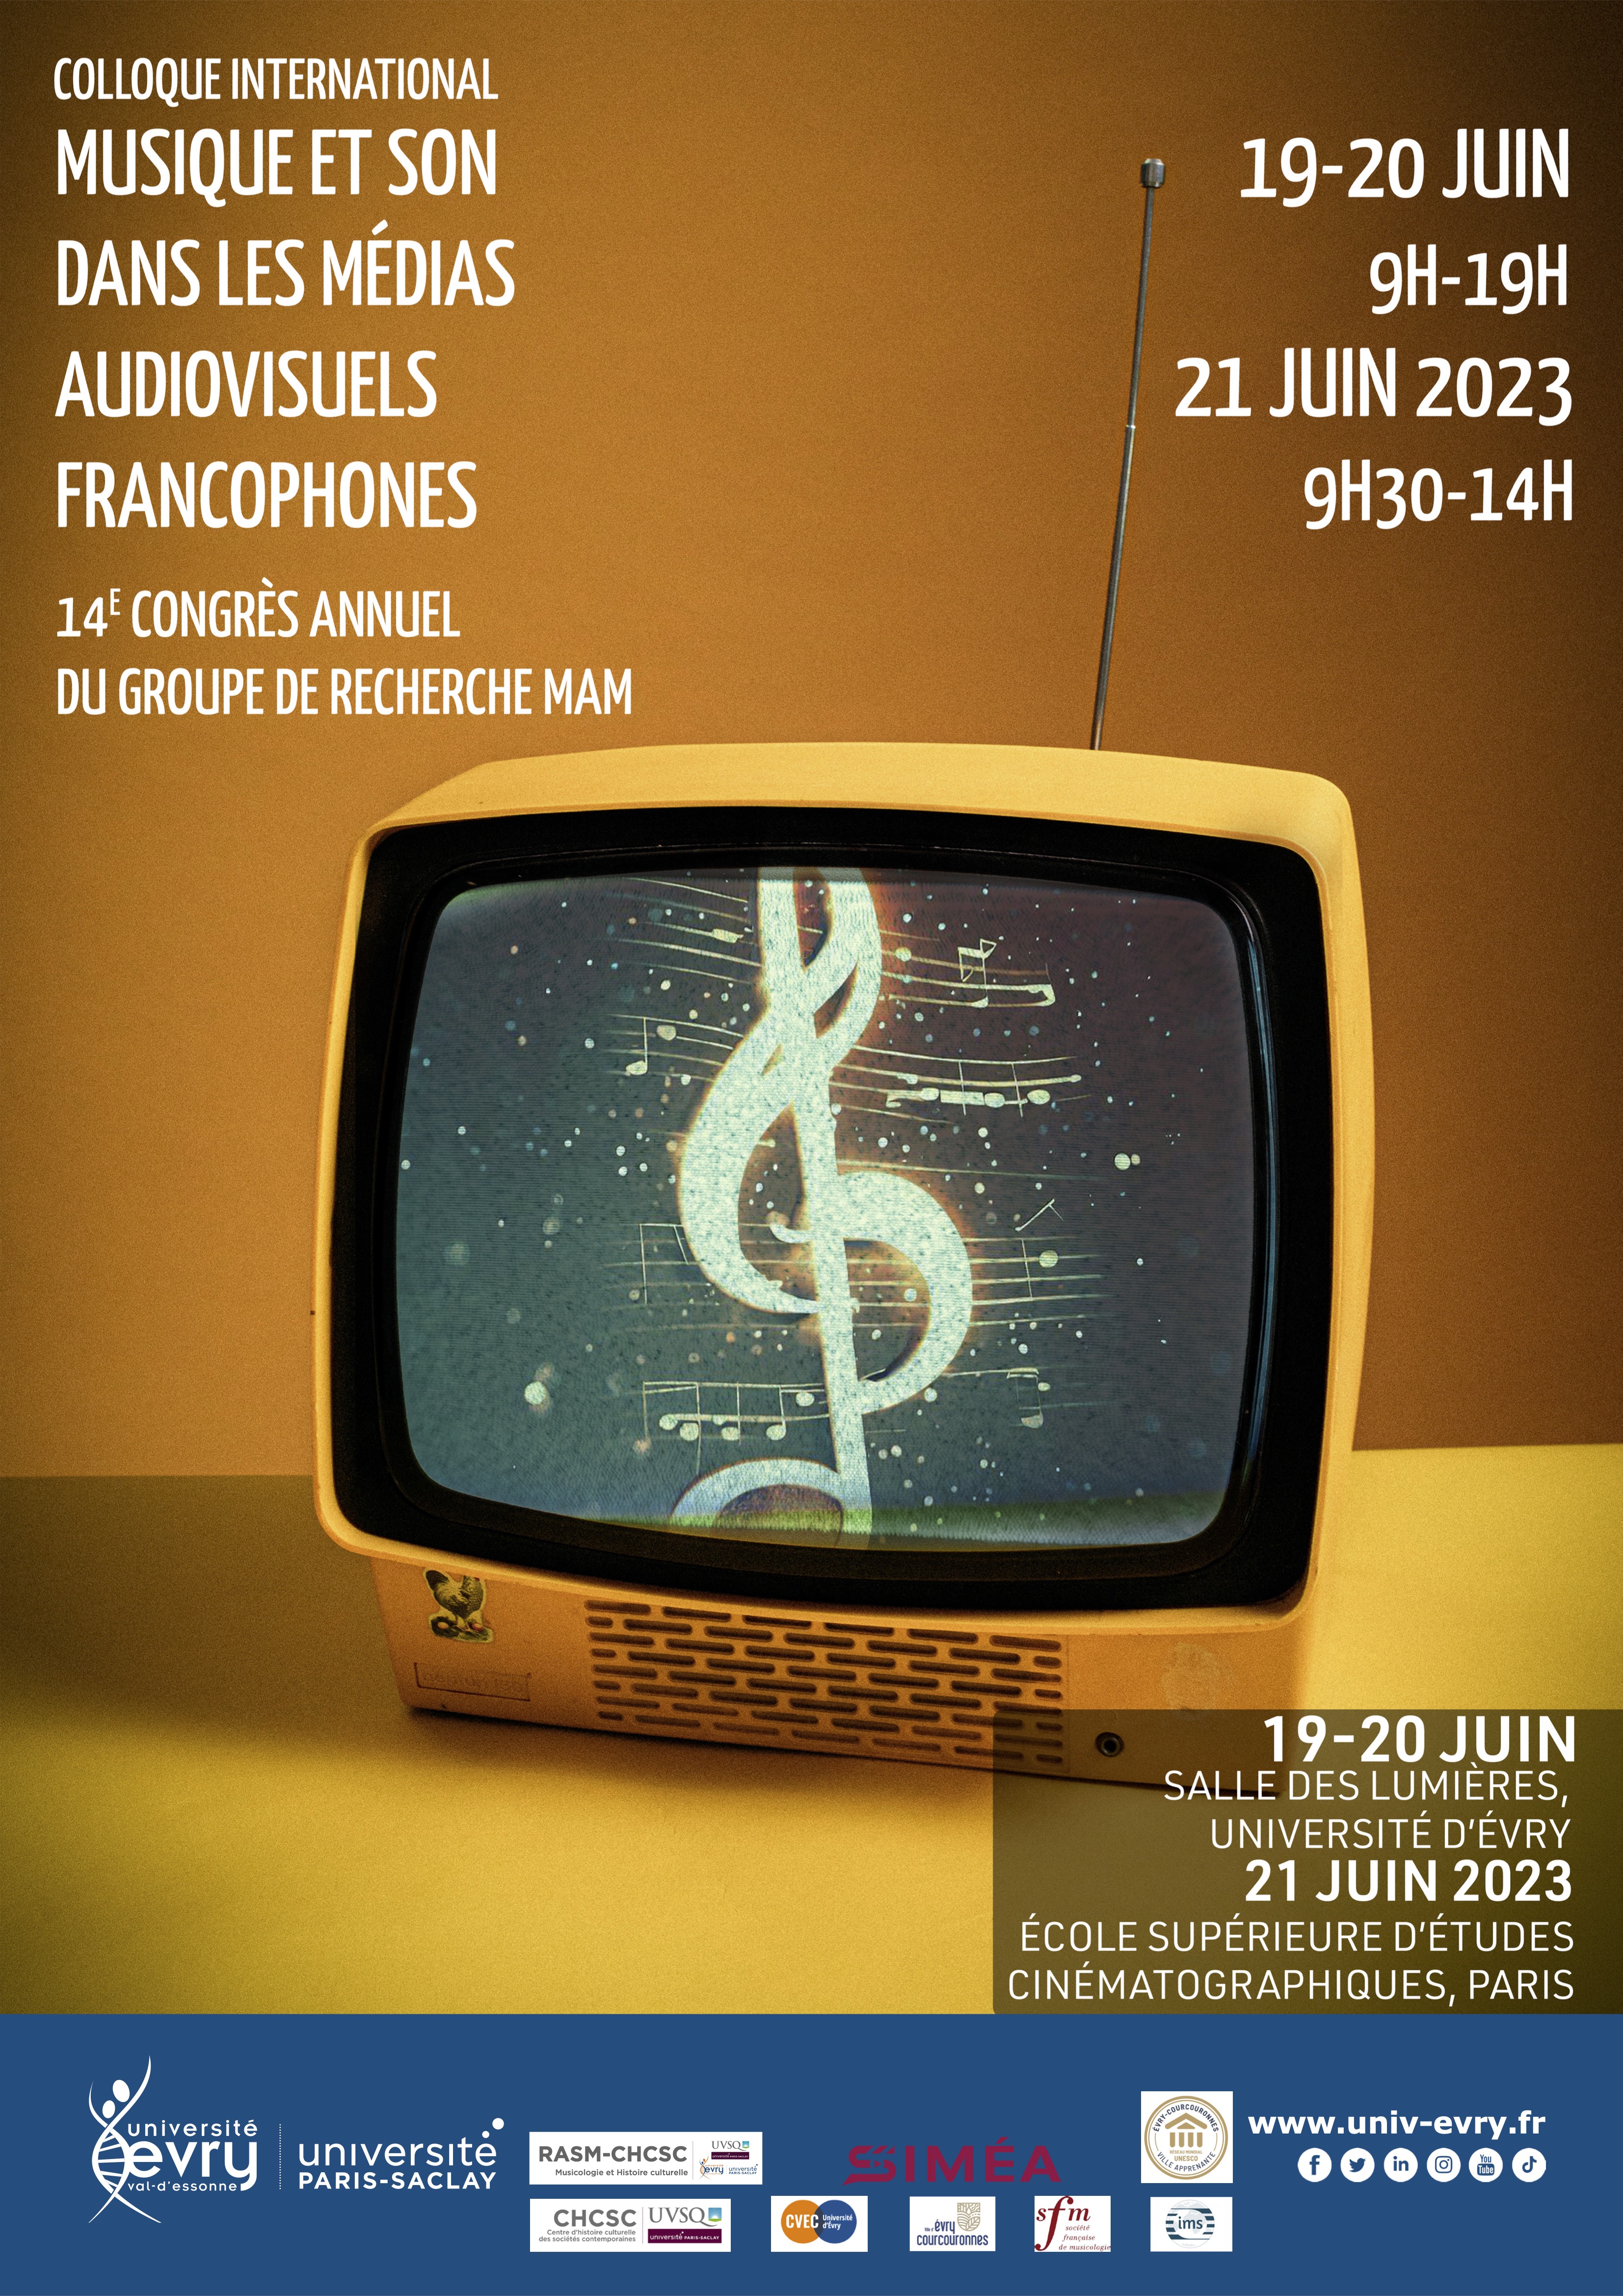 Programme Colloque international Musique et son dans les médias audiovisuels francophones